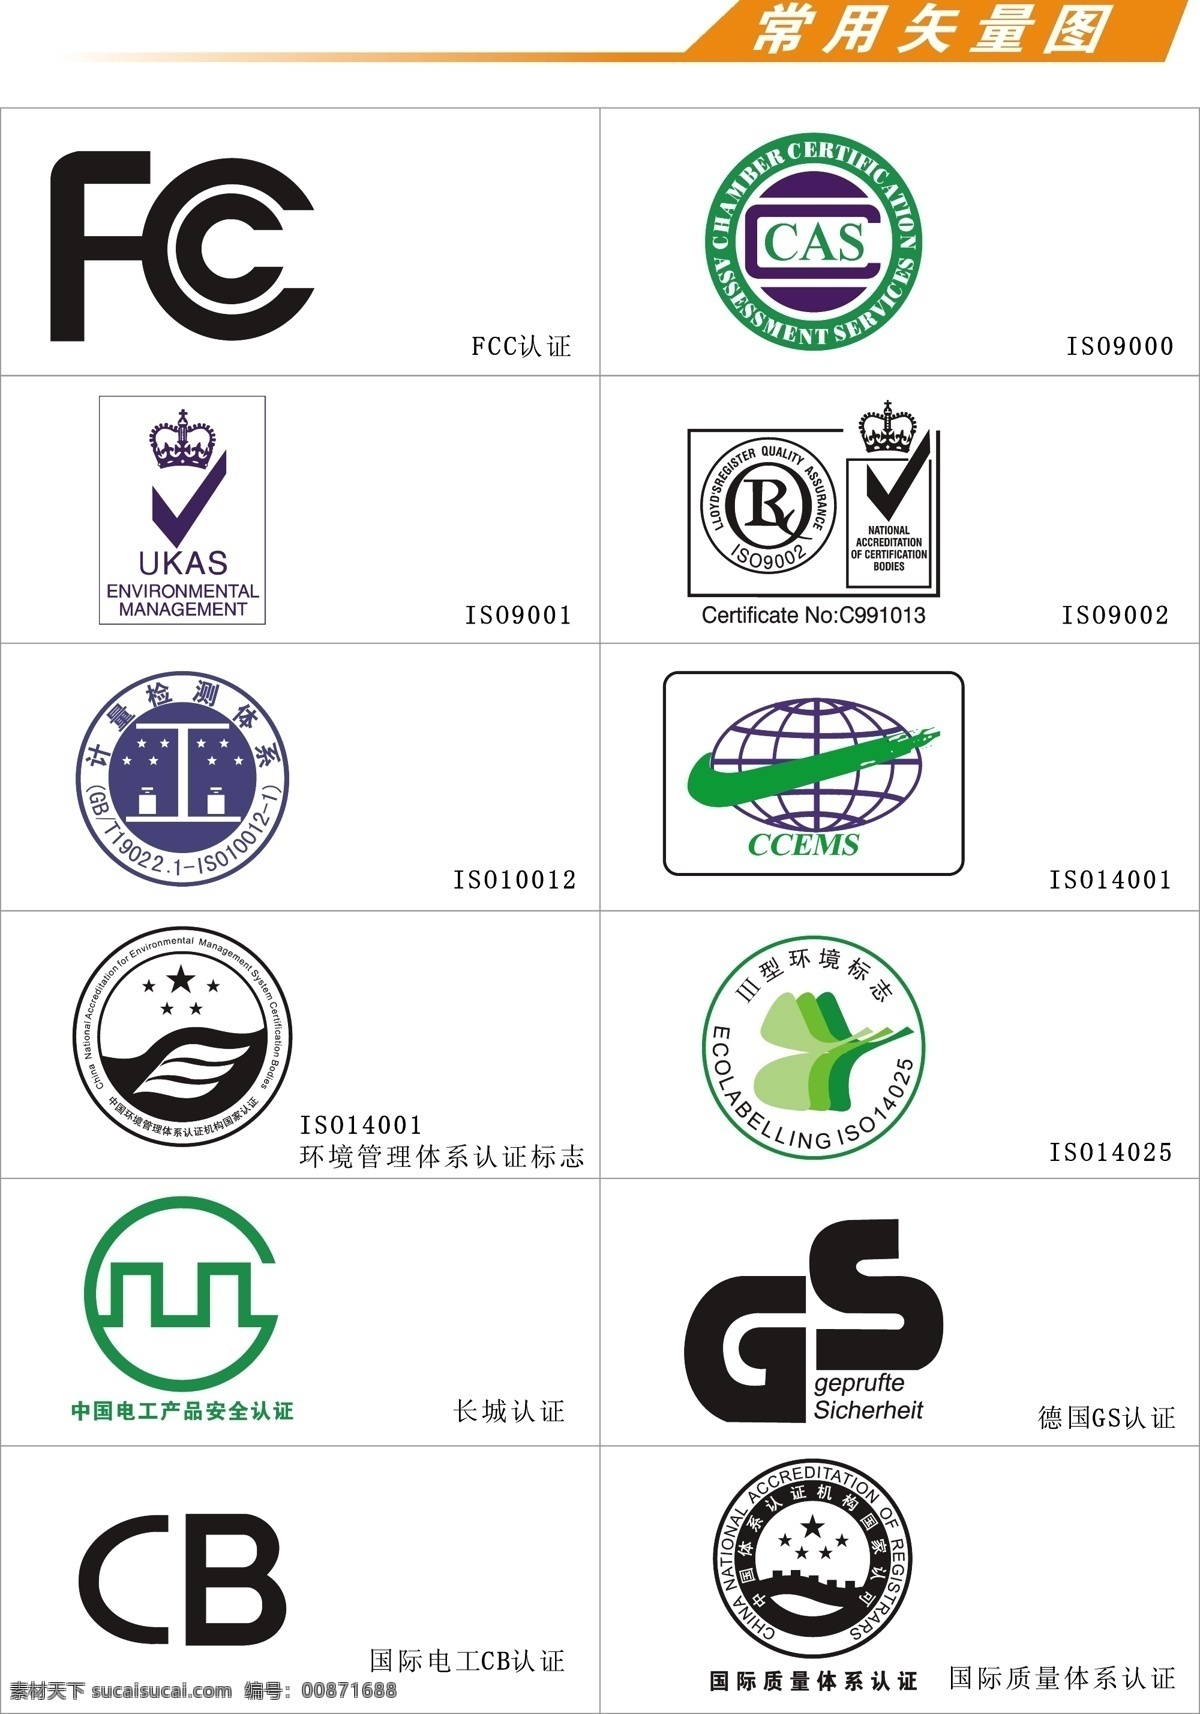 认证标志 fc cas 环境管理体系 长城认证 国际电工认证 矢量元素